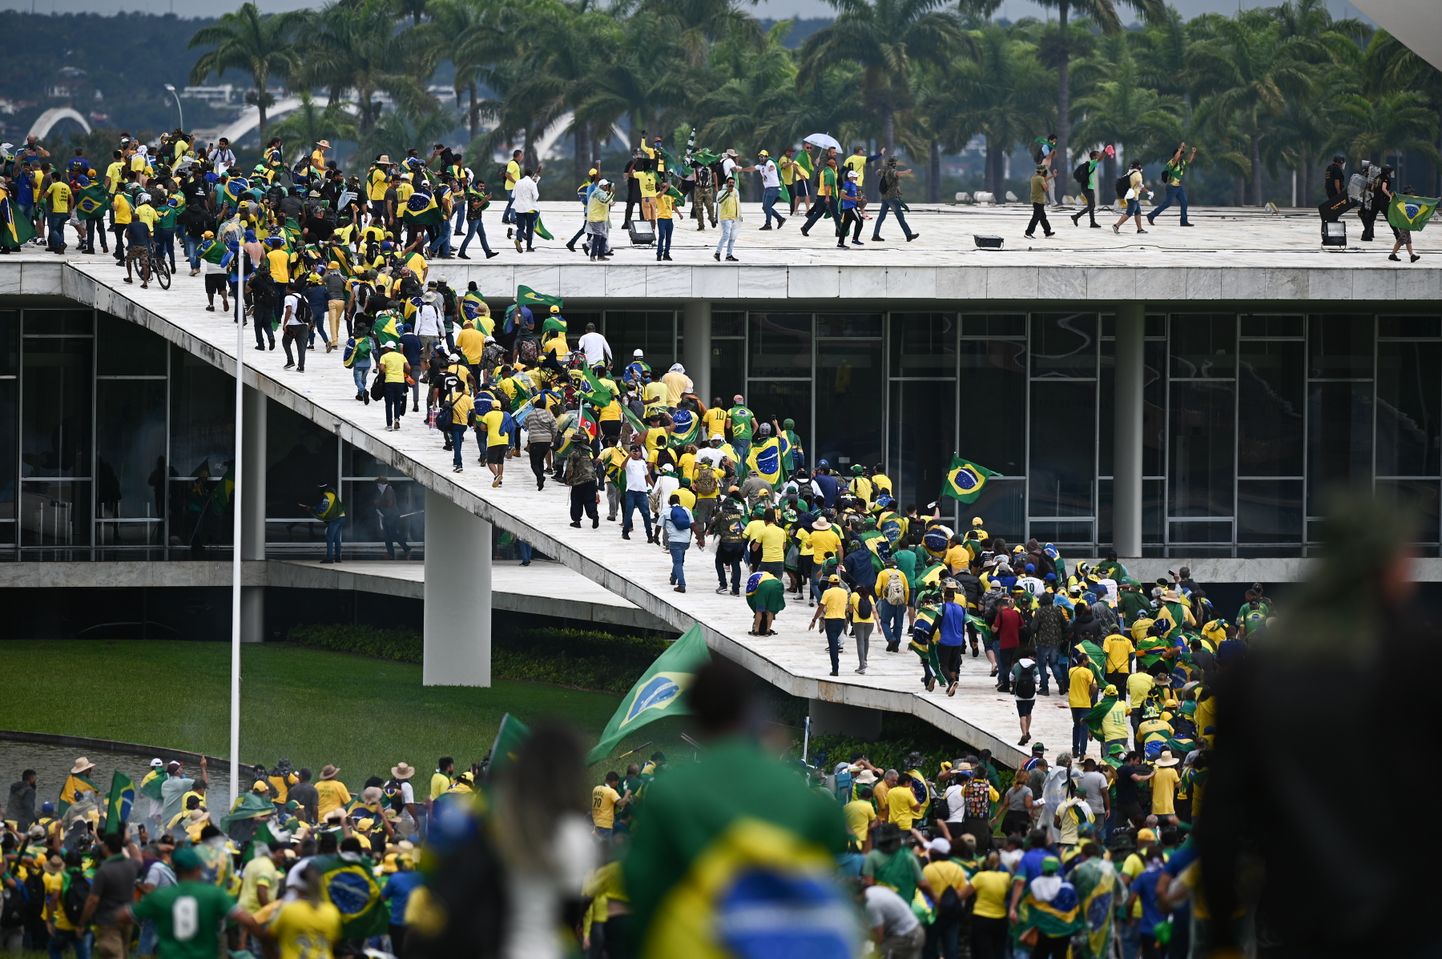 Brazīlijas parlamenta ēkā iebrukuši bijušā prezidenta Bolsonaru atbalstītāji.